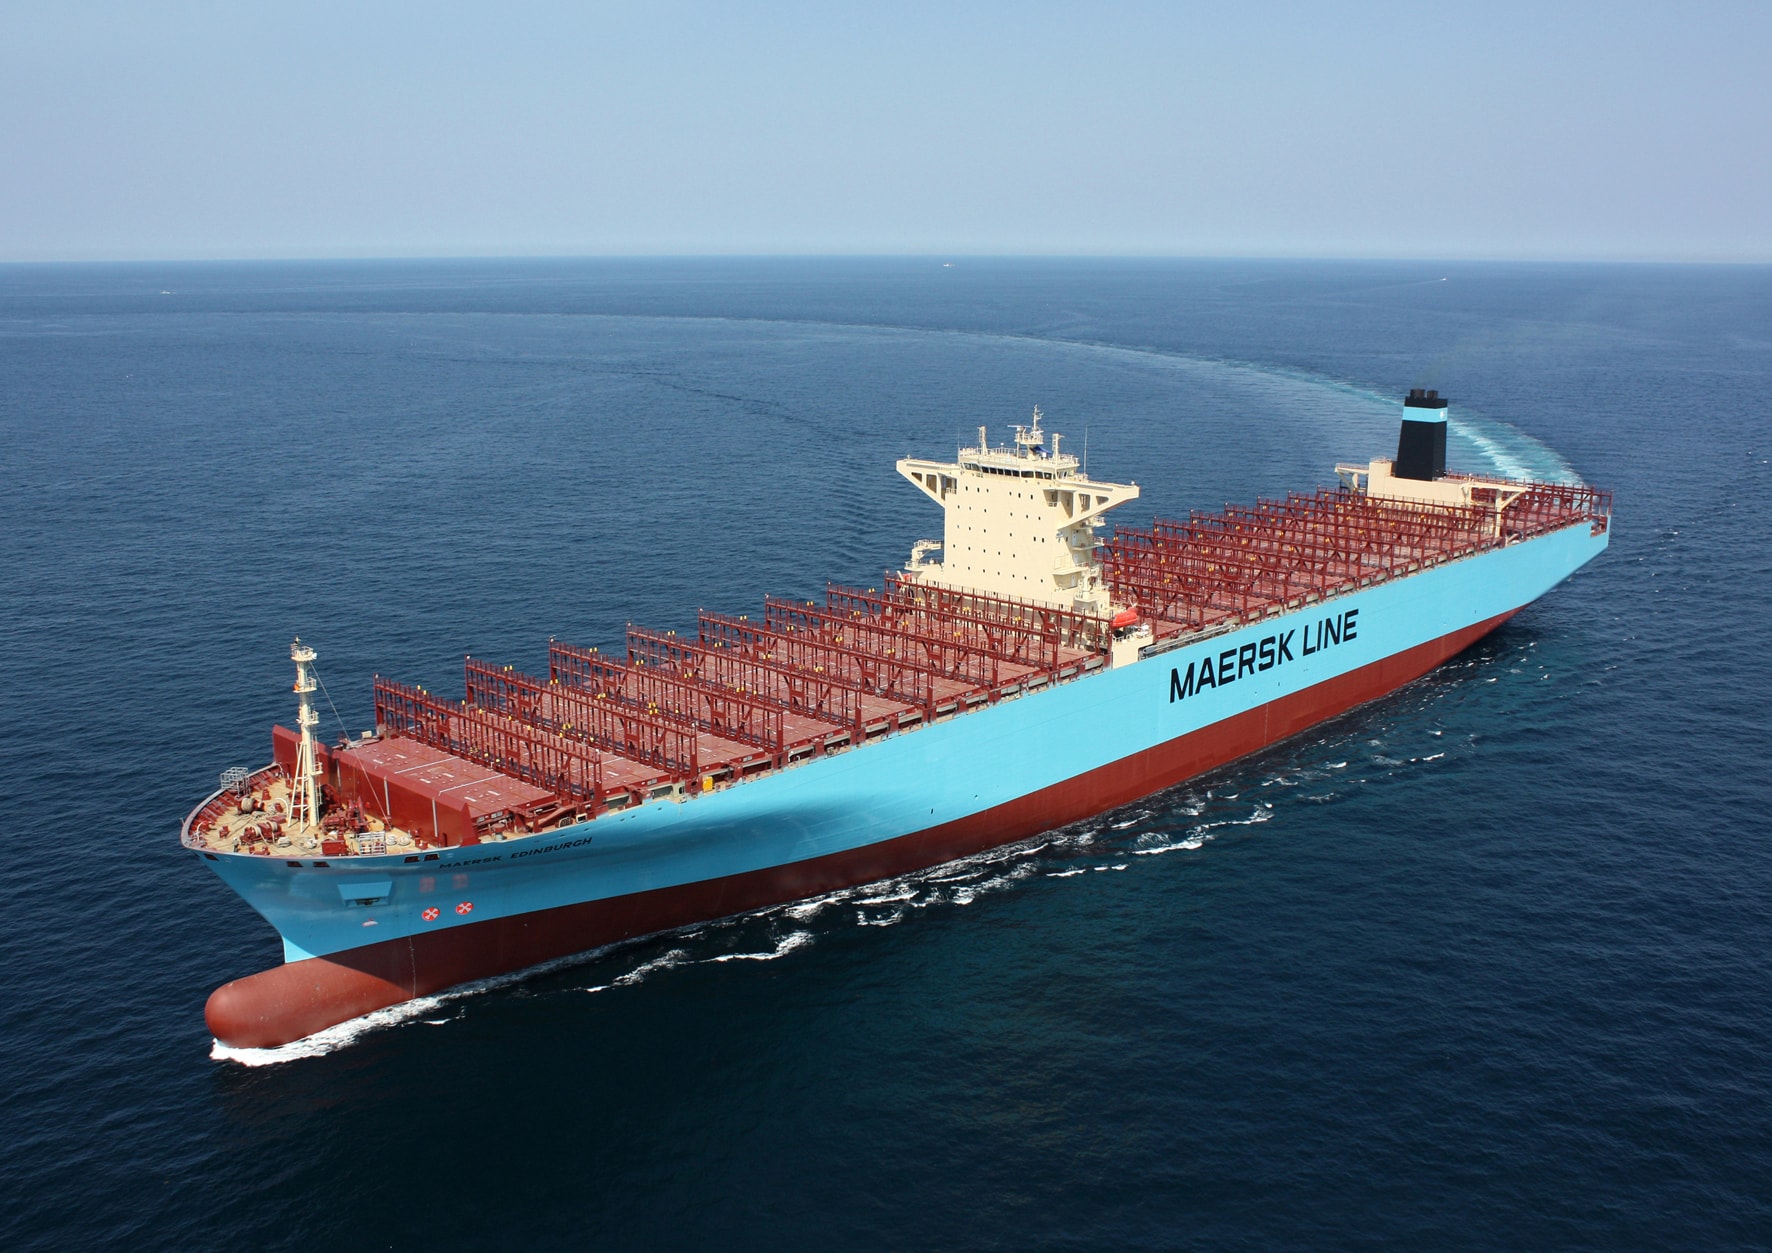 Контейнеровоз Maersk Kdinburch поварачивает в открытом море